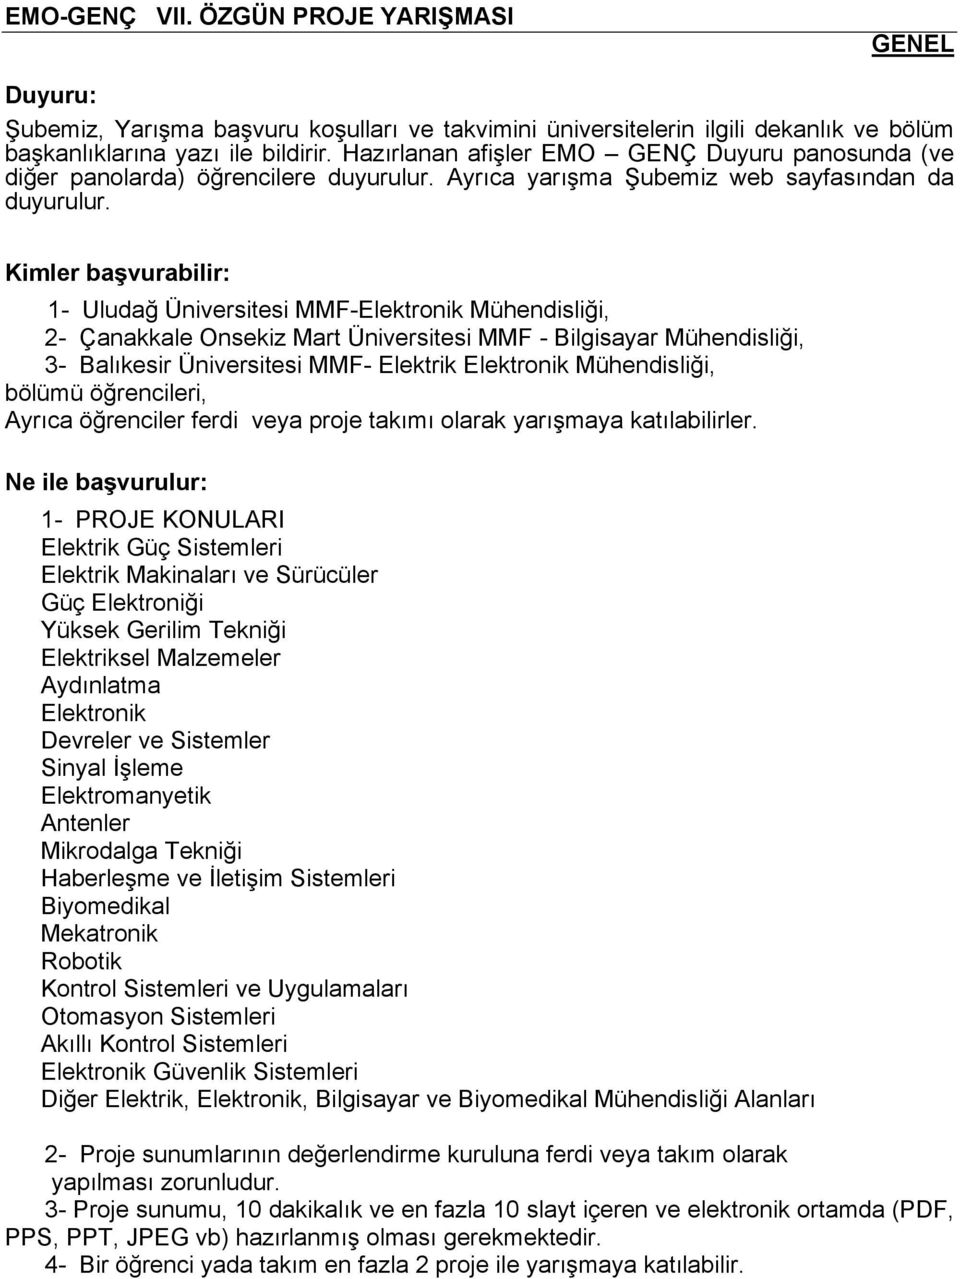 Kimler başvurabilir: 1- Uludağ Üniversitesi MMF-Elektronik Mühendisliği, 2- Çanakkale Onsekiz Mart Üniversitesi MMF - Bilgisayar Mühendisliği, 3- Balıkesir Üniversitesi MMF- Elektrik Elektronik